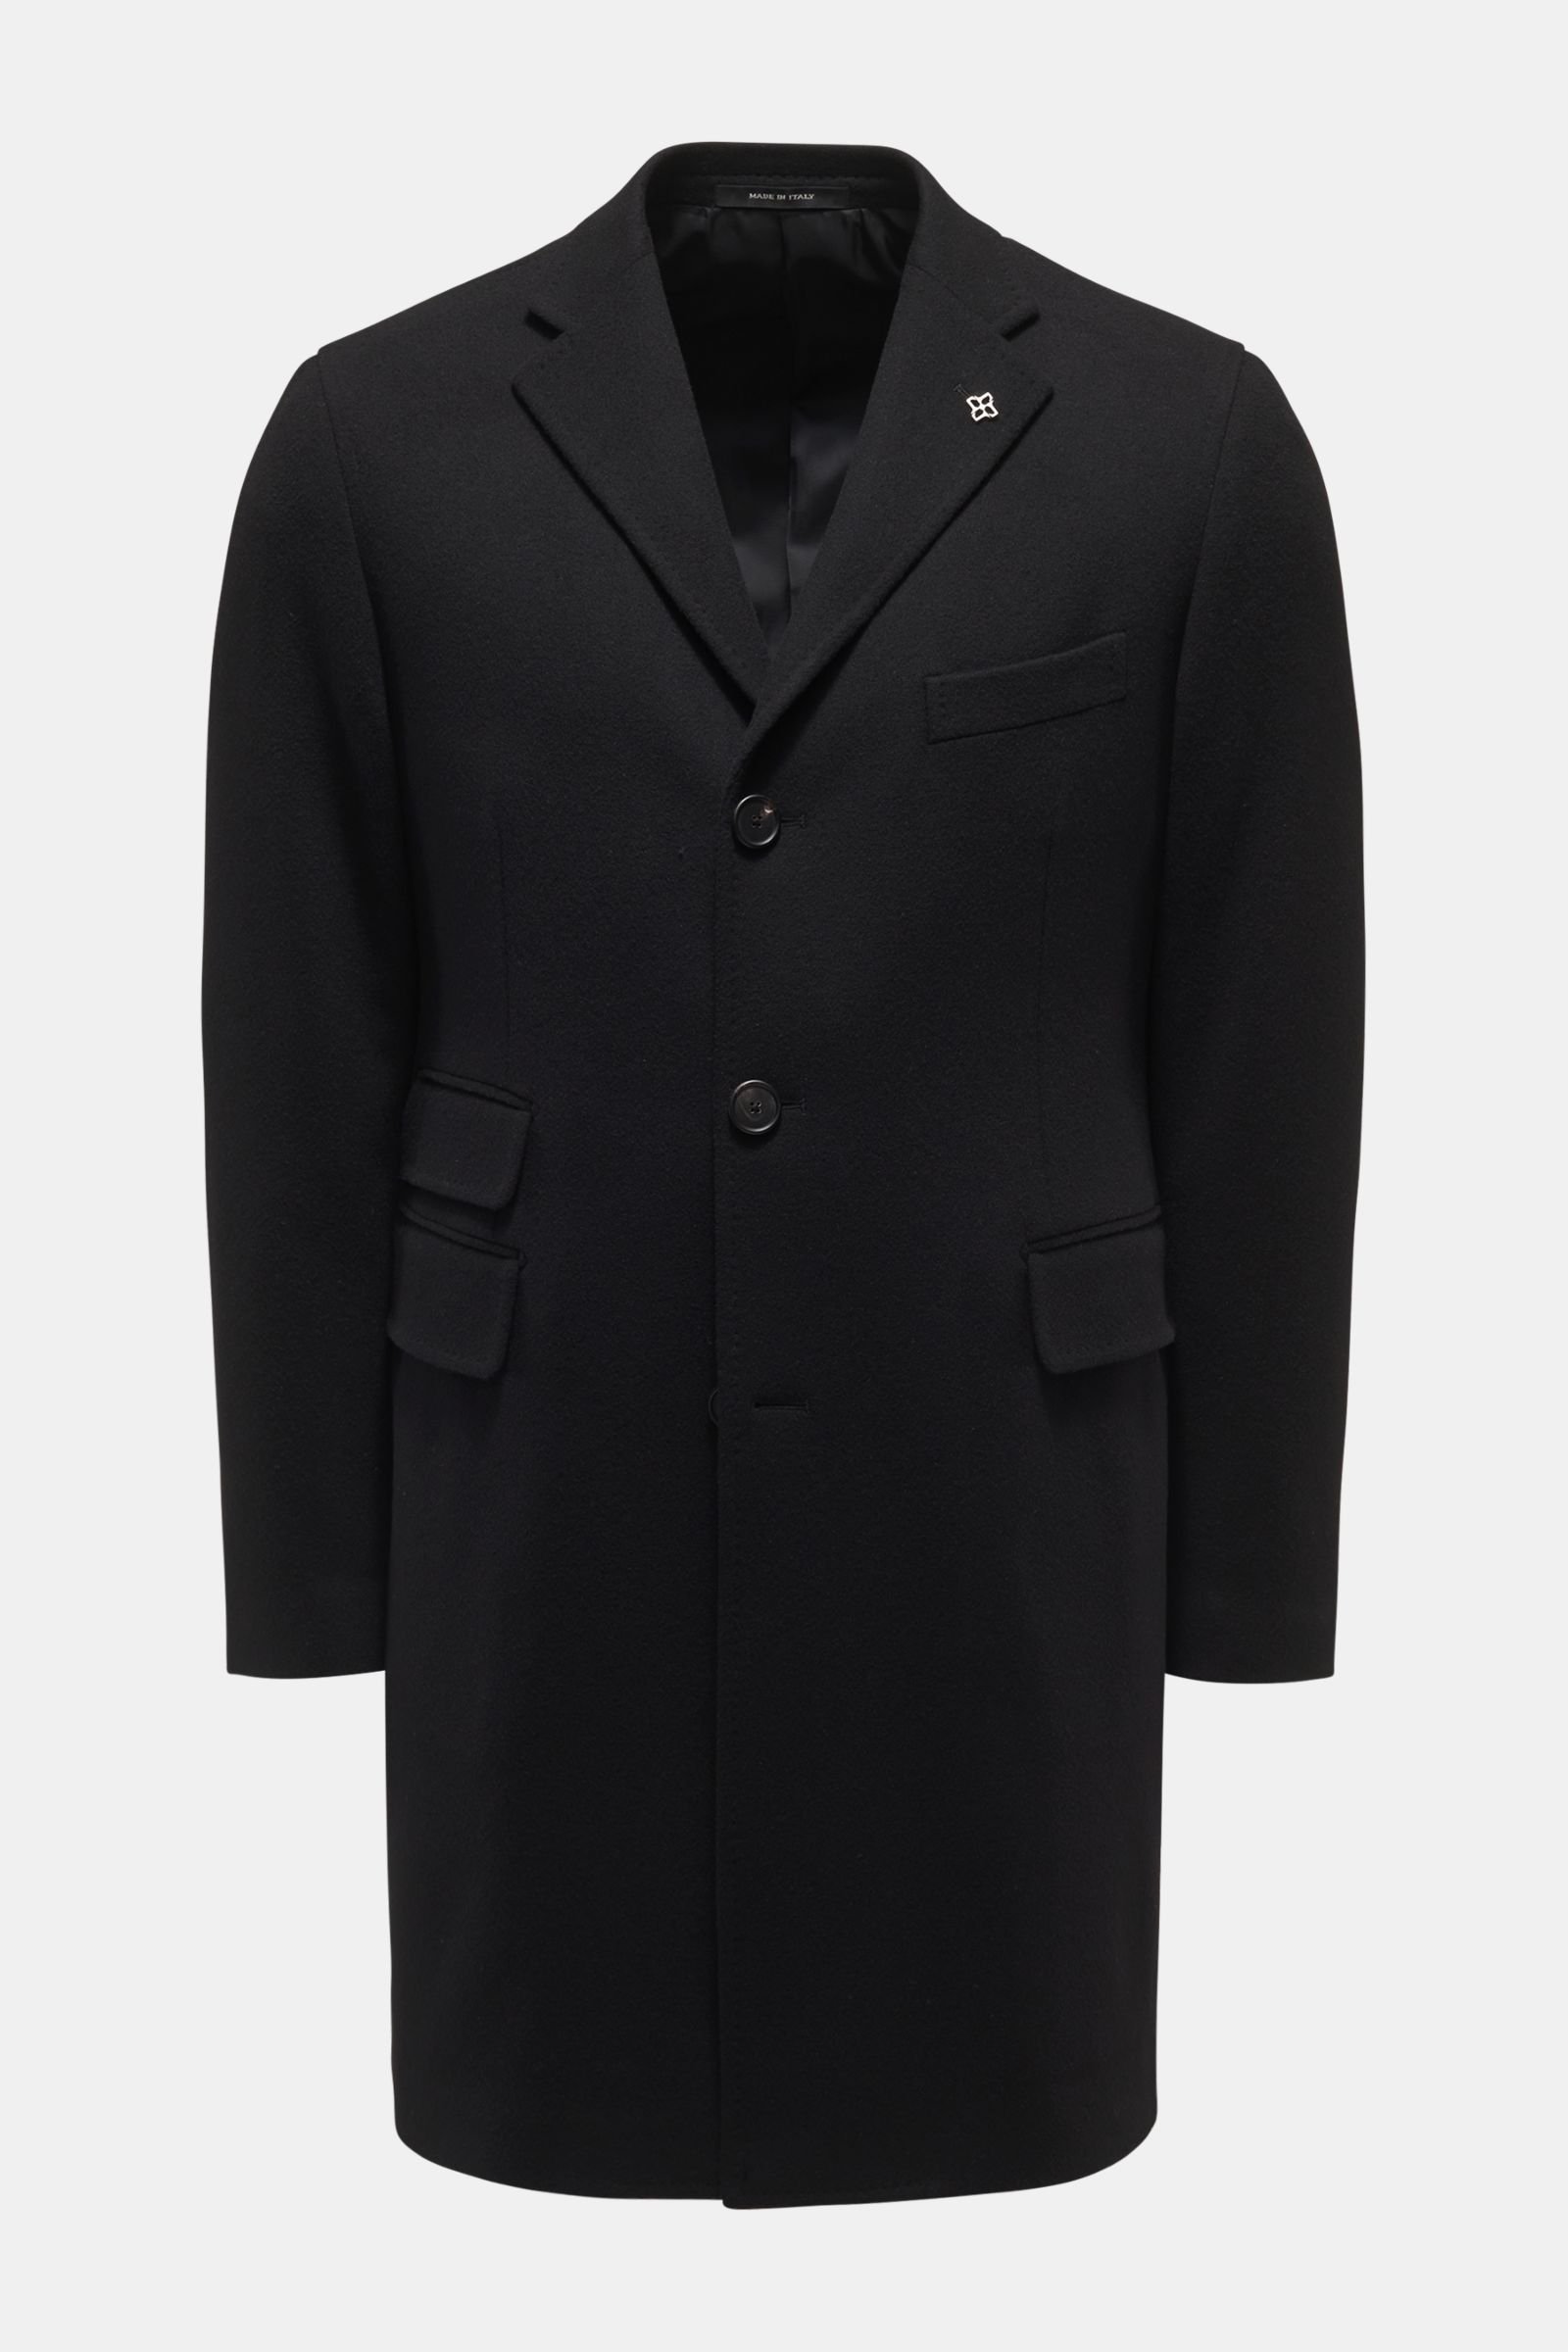 Mantel schwarz